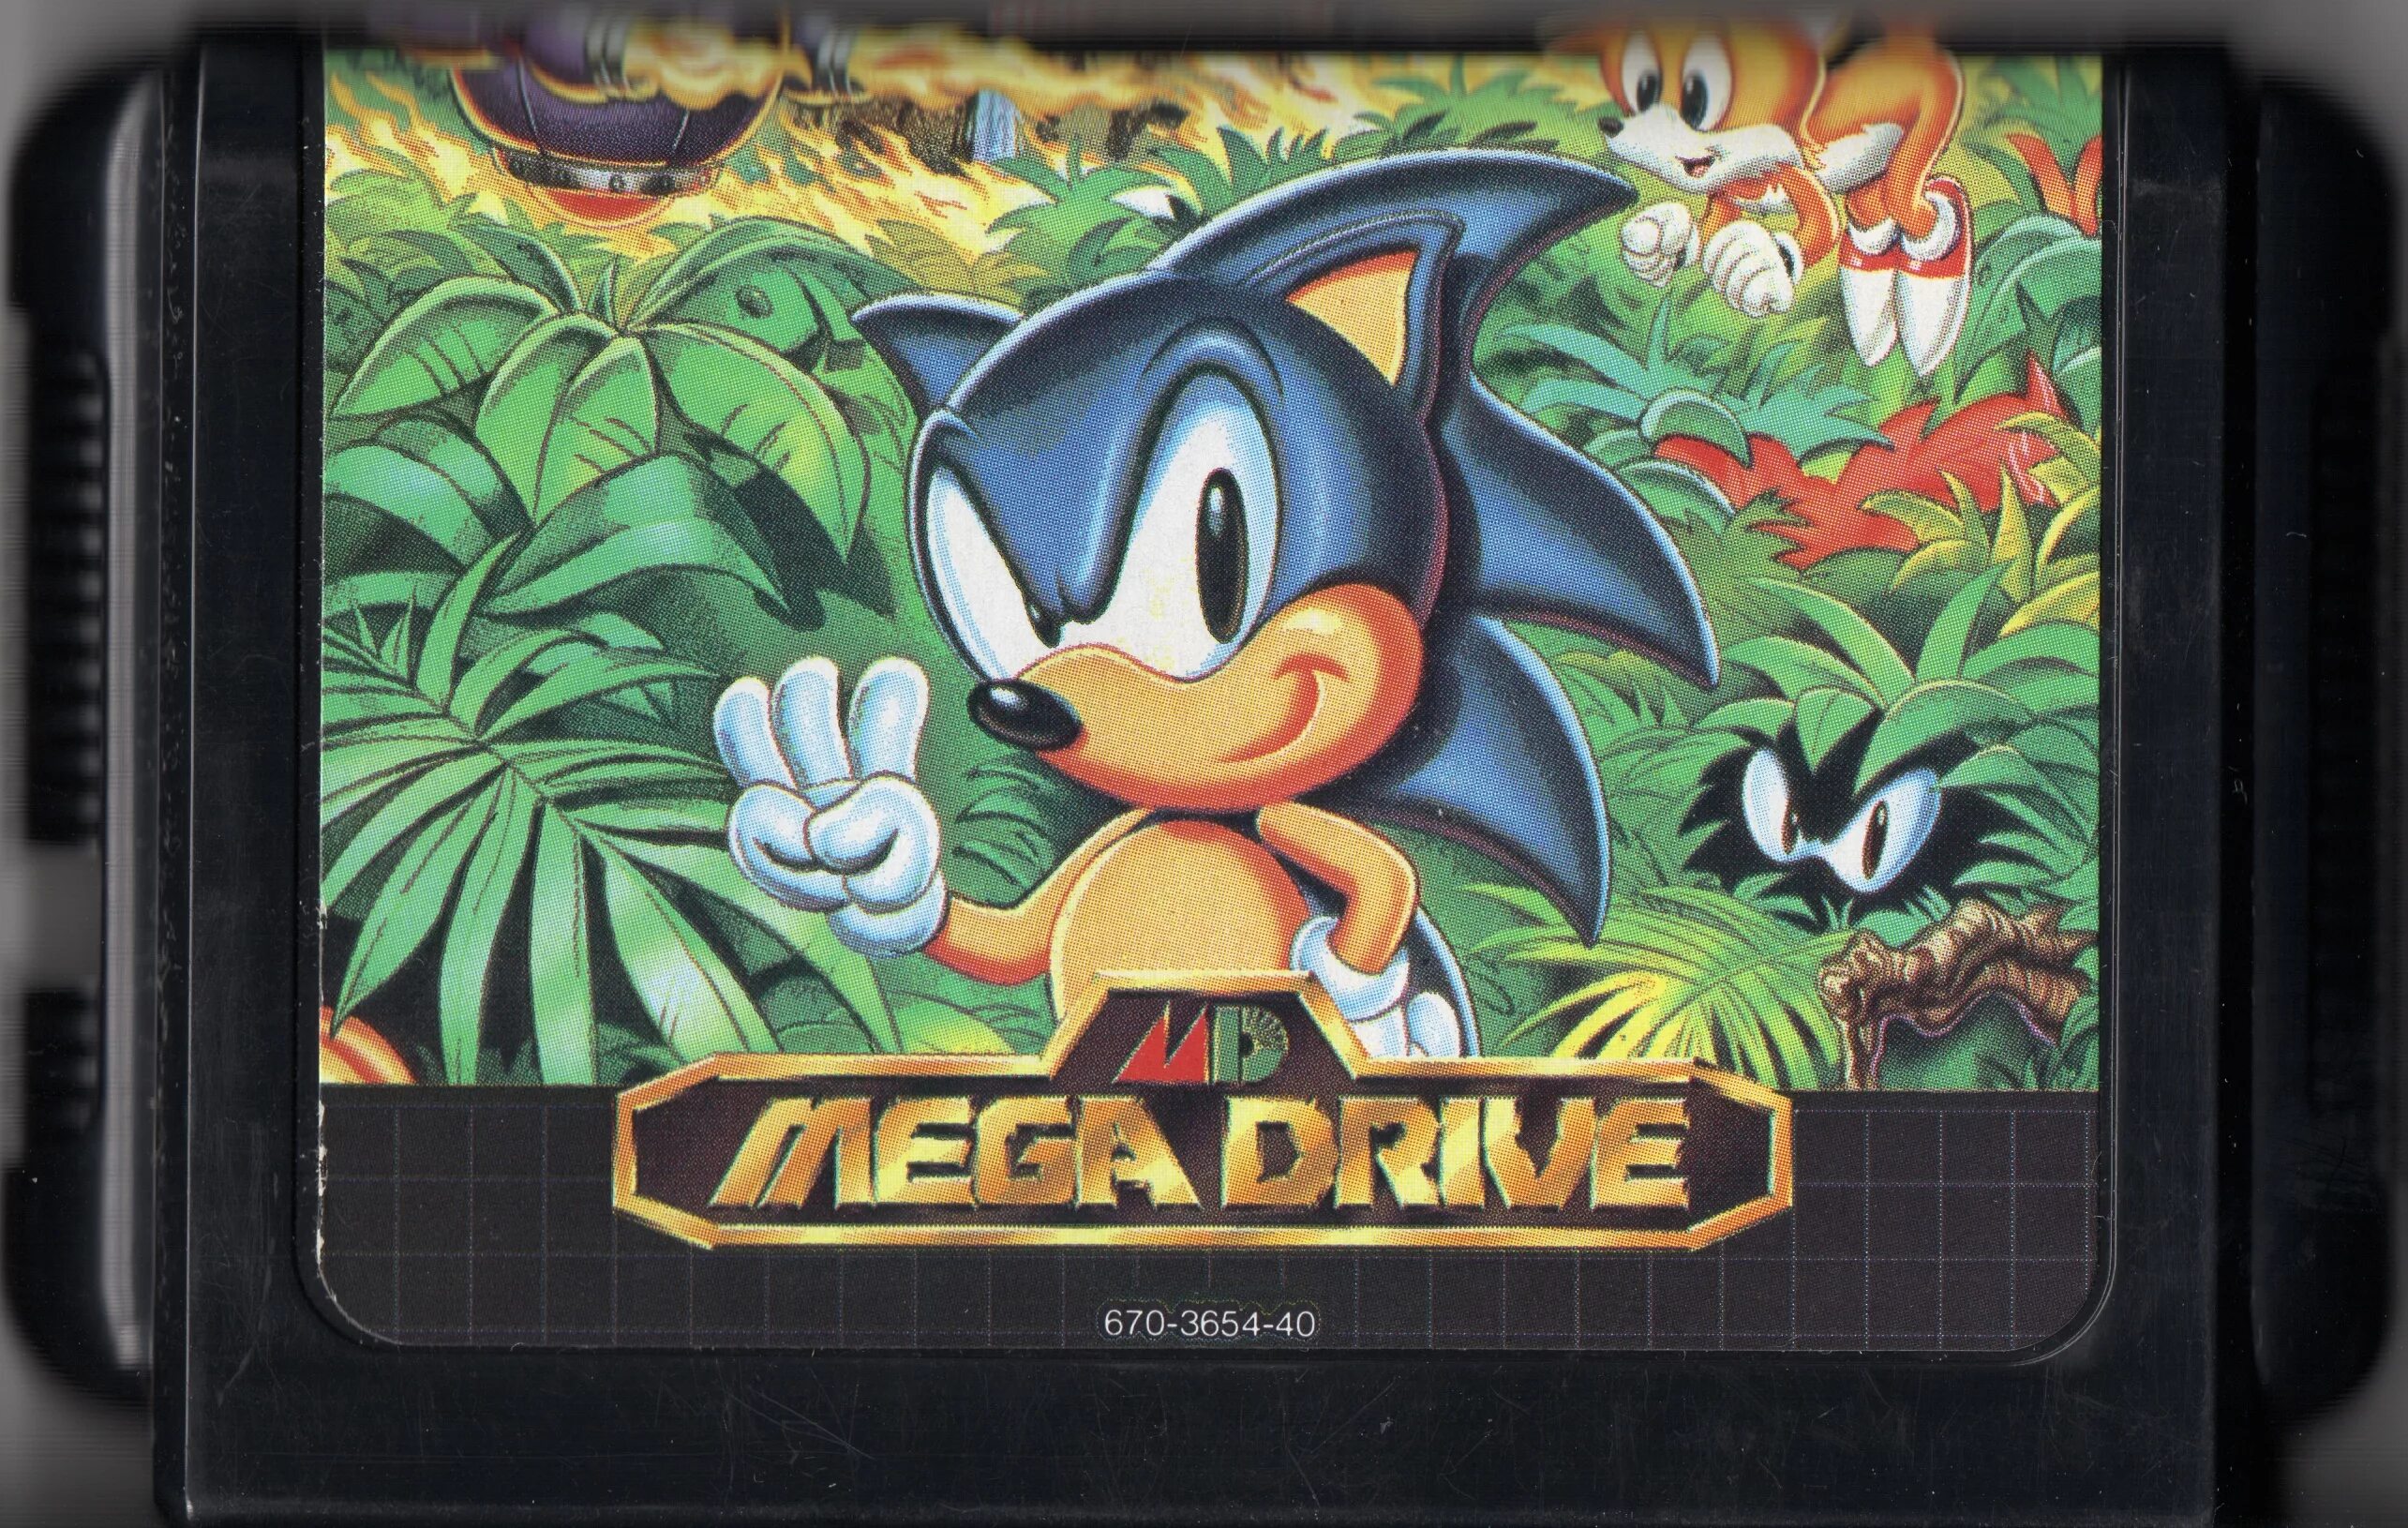 Sega Mega Drive картриджи Sonic. Sega Mega Drive Cartridge Sonic 1. Sega Mega Drive 2 картриджи Sonic. Sonic 3 Sega Mega Drive. Соник мега драйв